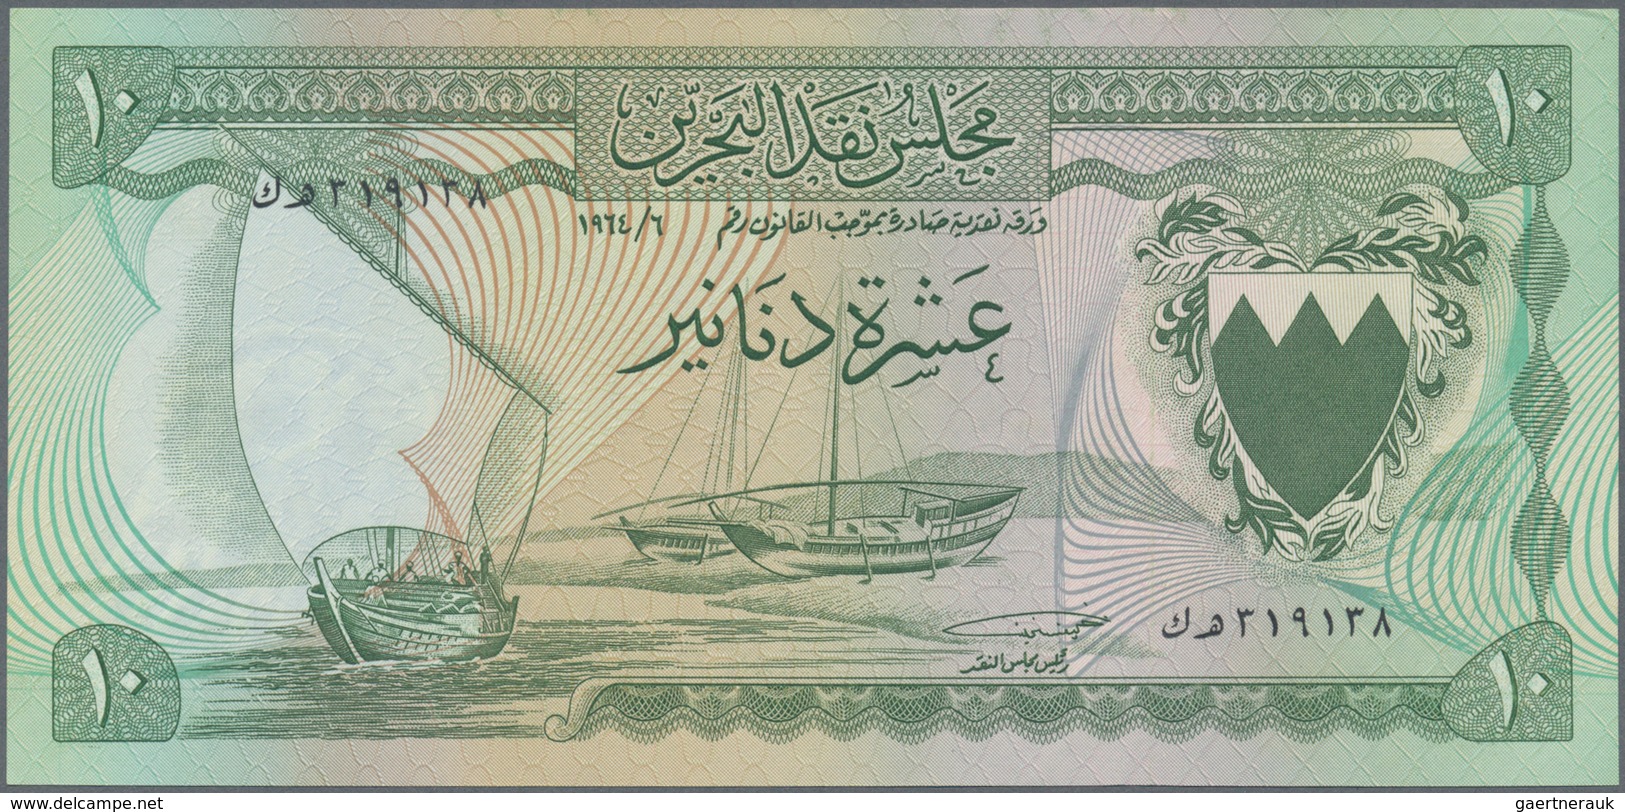 01108 Bahrain: 10 Dinars L.1964, P.6 In UNC Rare! - Bahrein